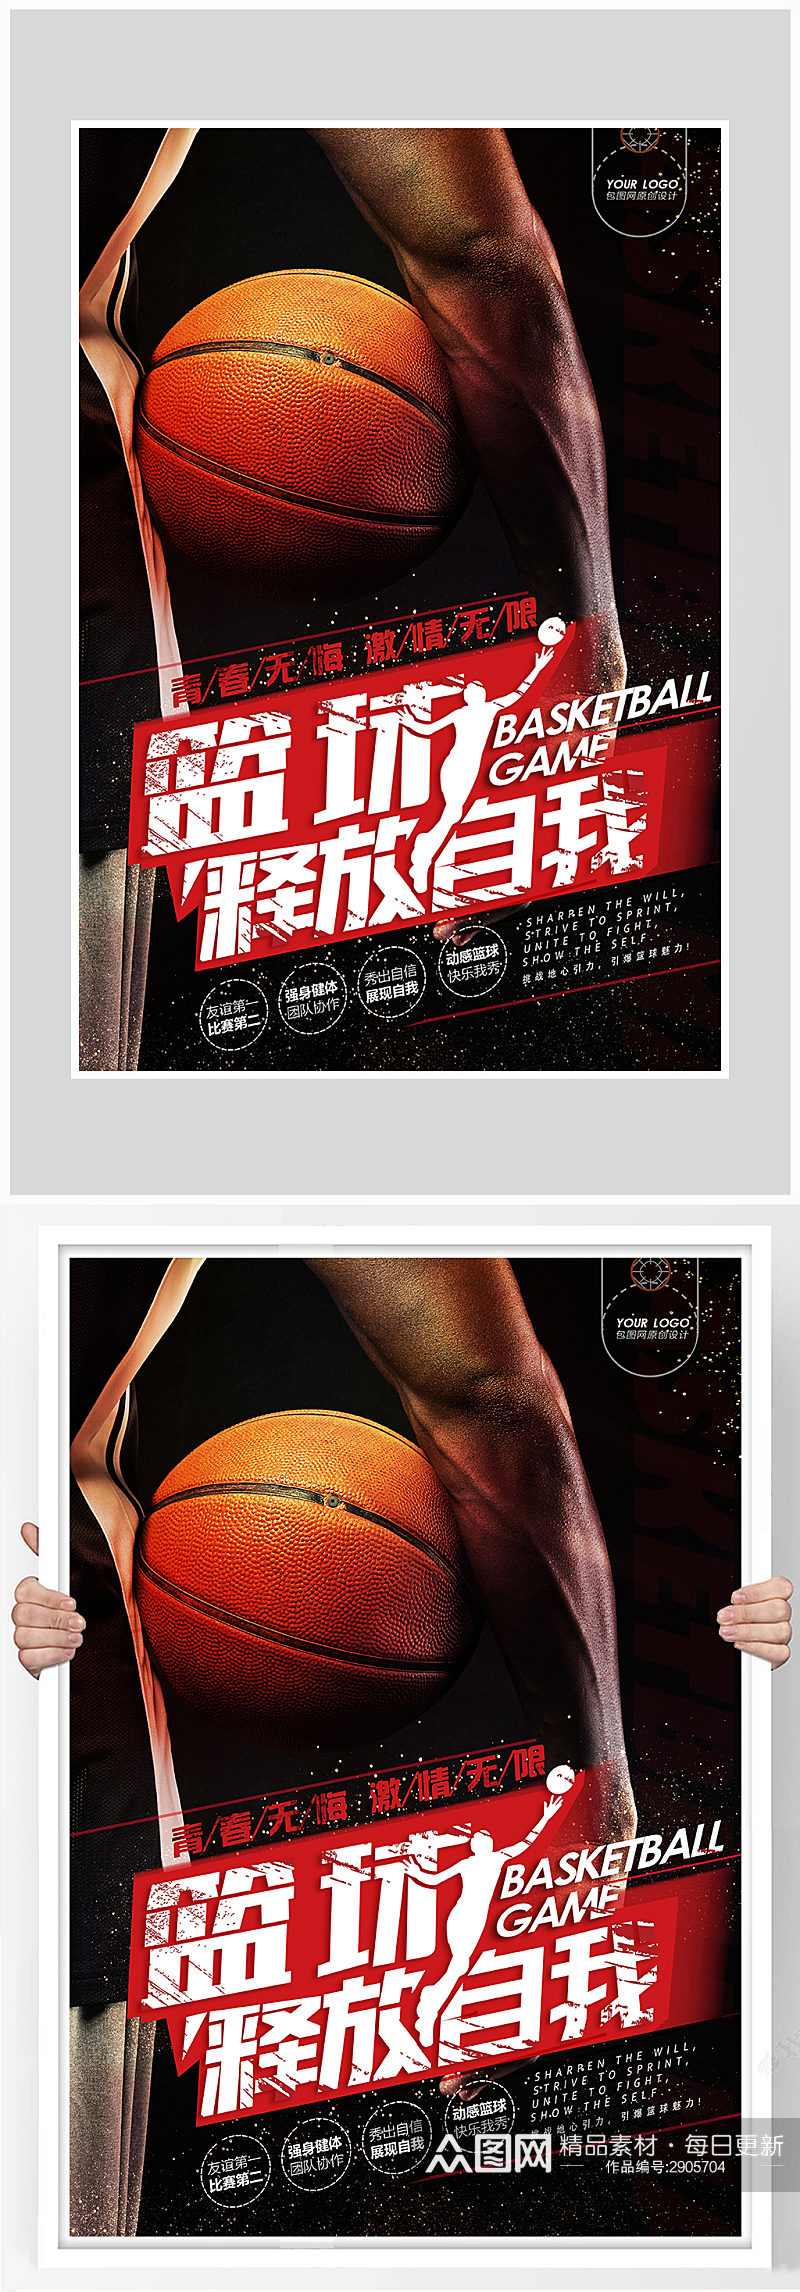 高端大气篮球比赛海报设计素材